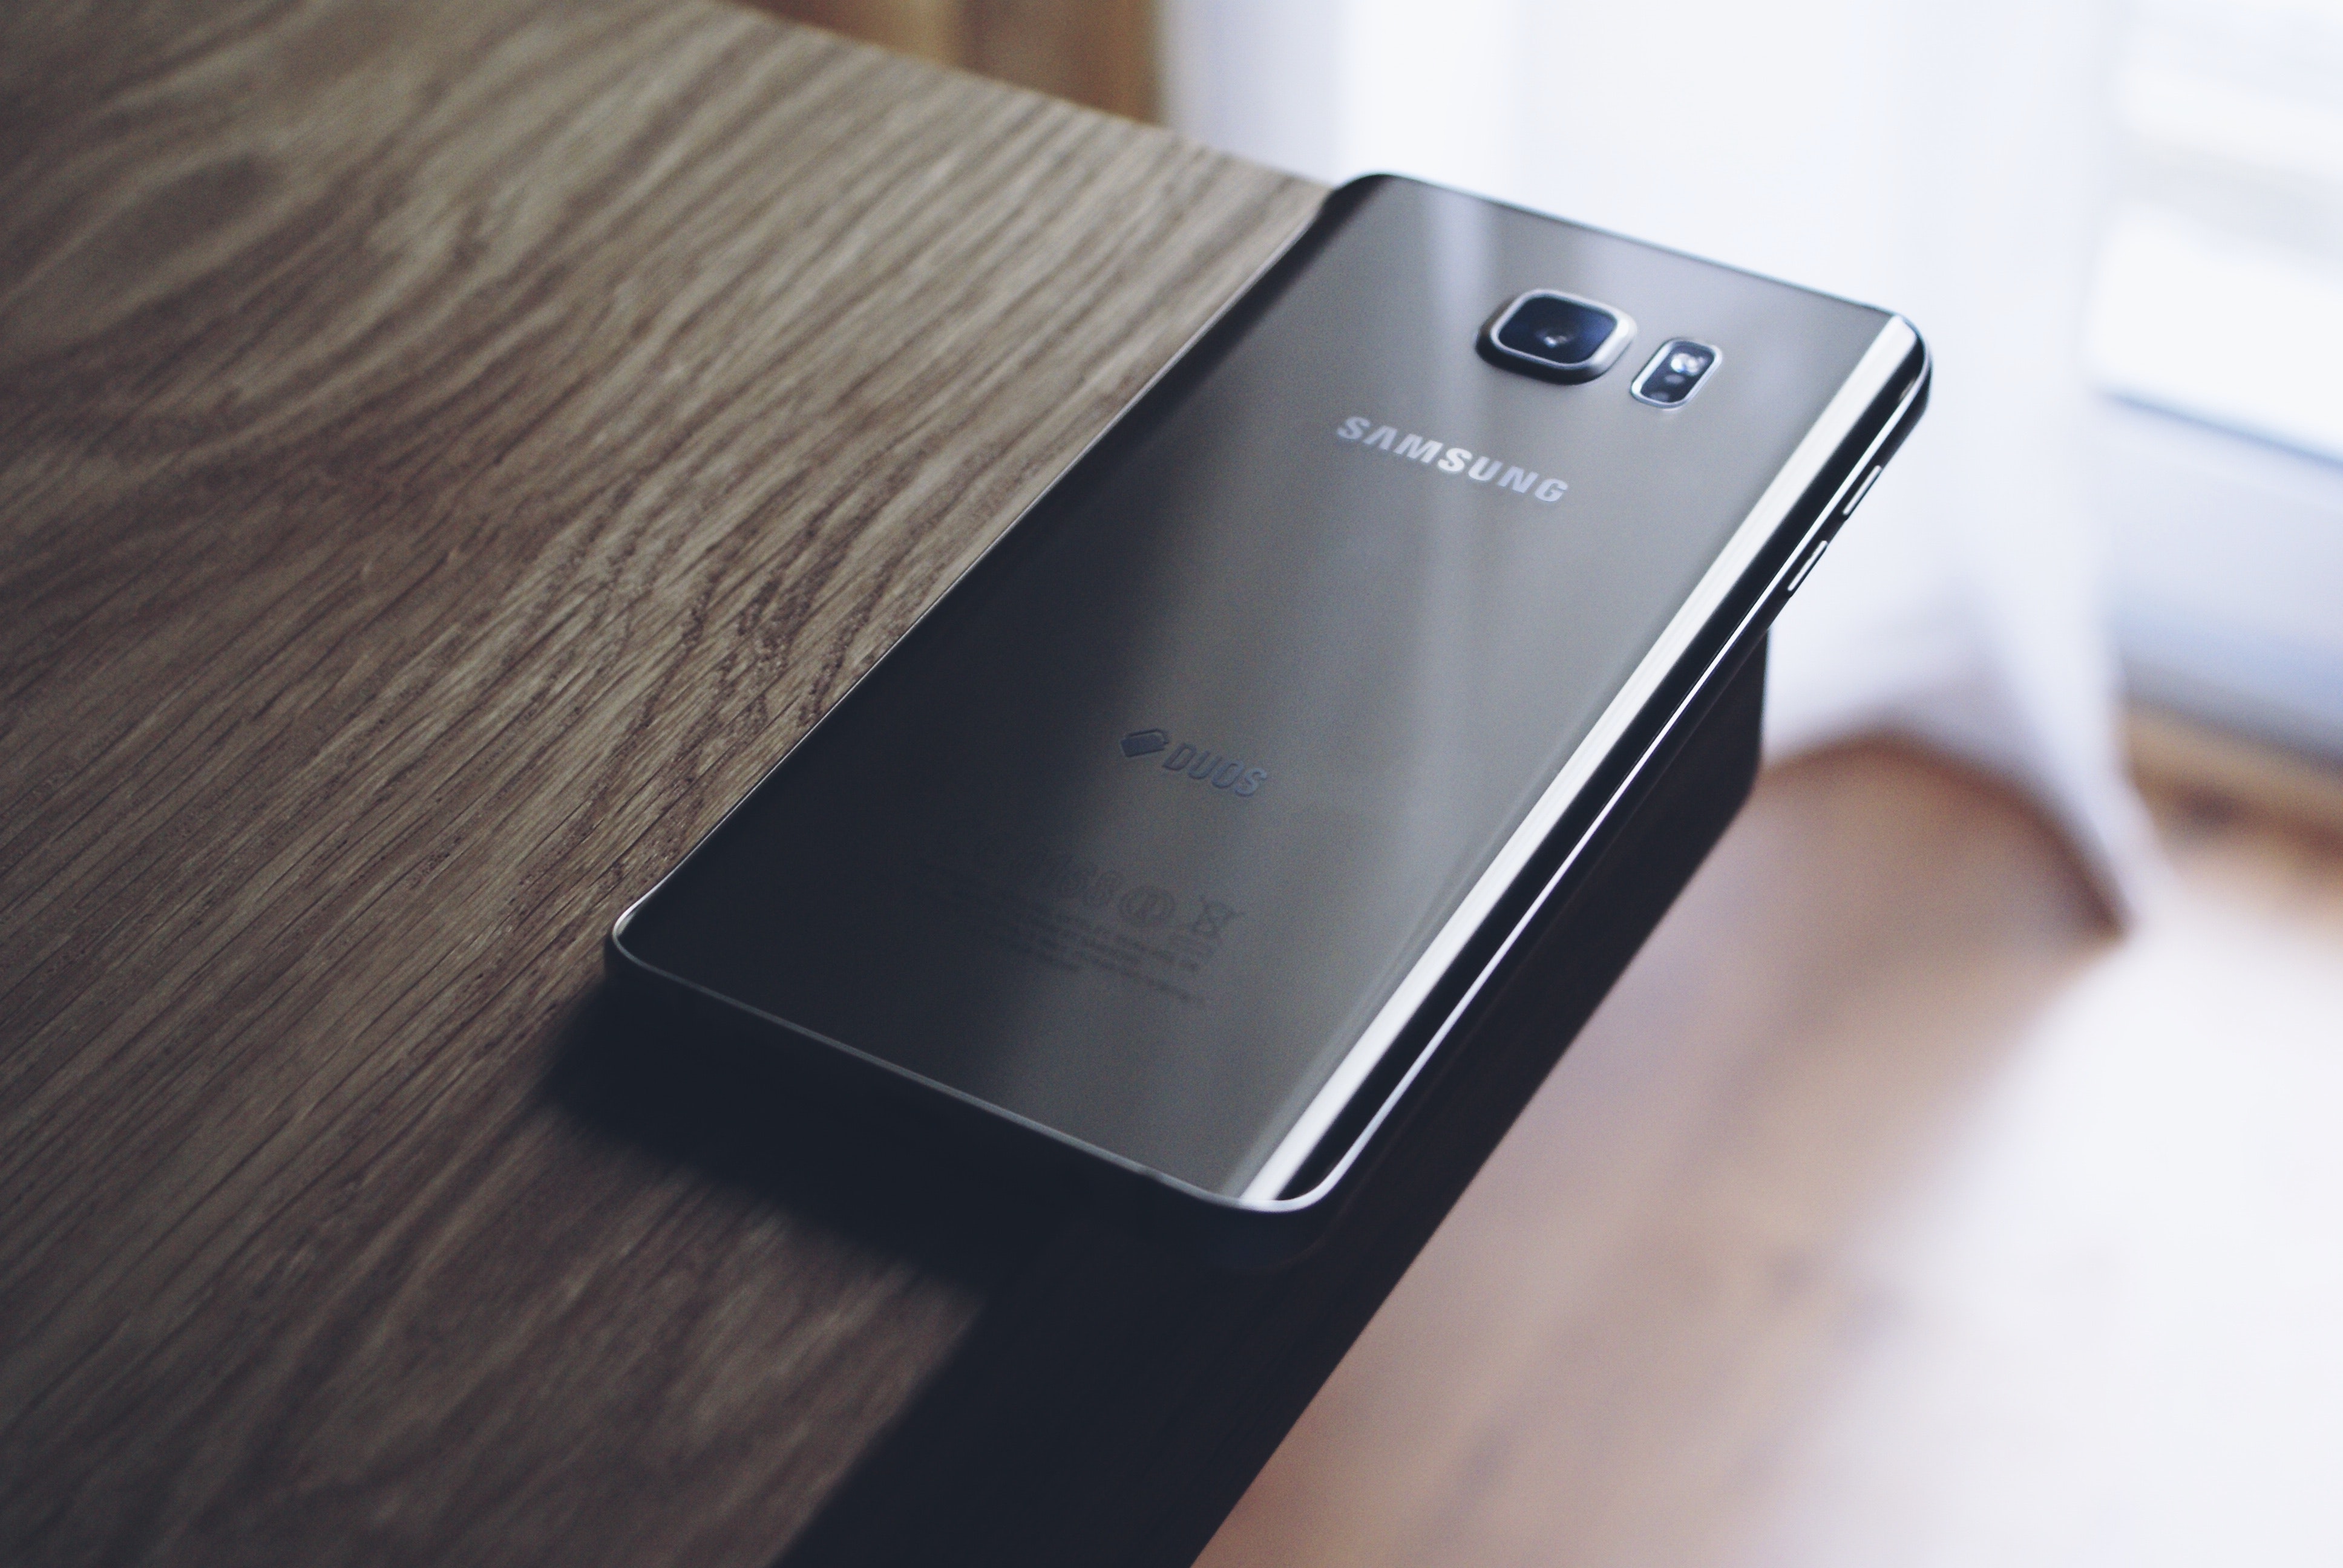 Samsungi nutitelefonidel on rohkem Microsofti rakendusi, sealhulgas eelinstallitud teie telefon ja kontor